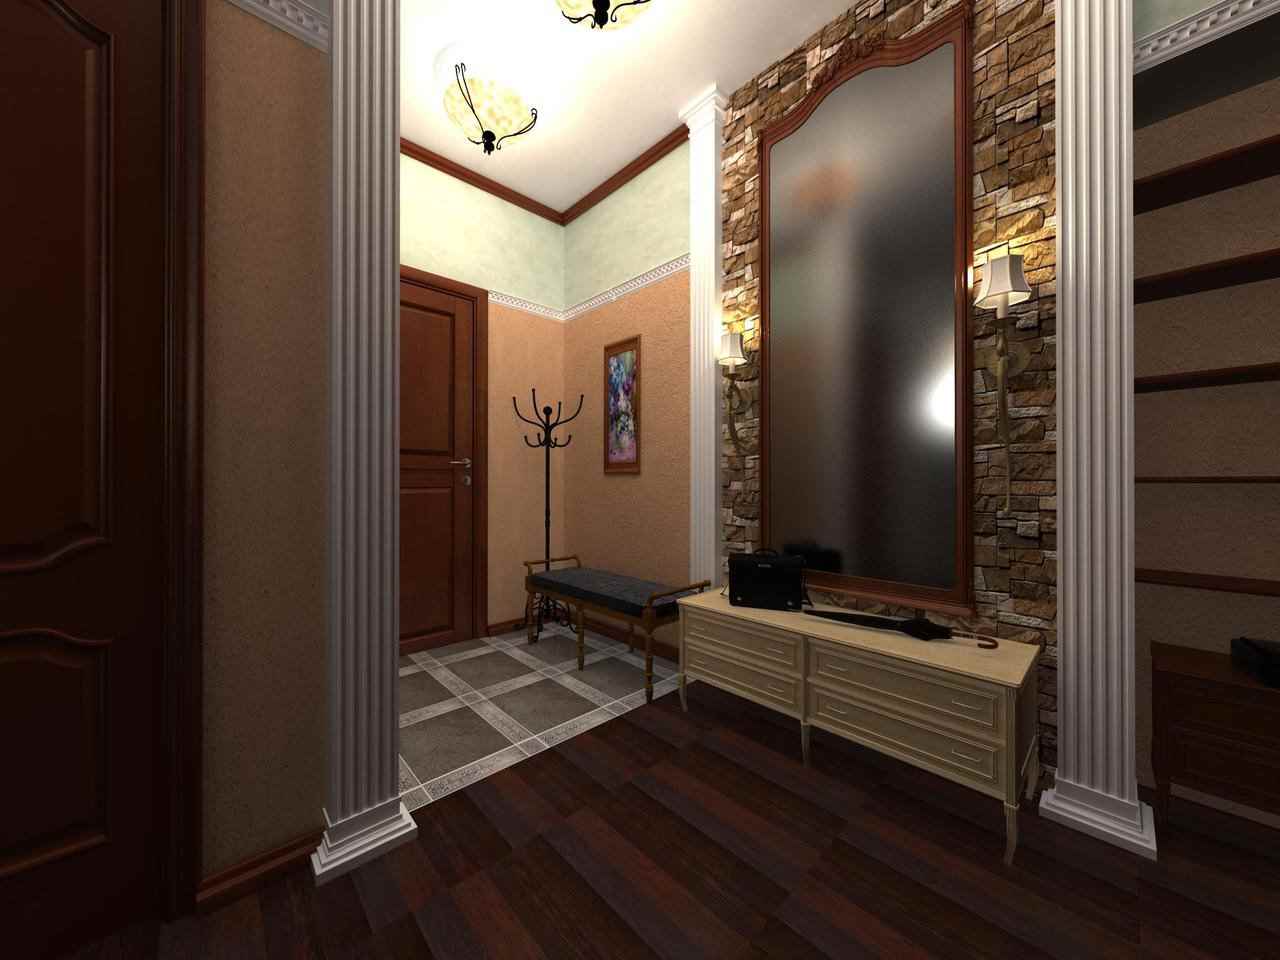 l'idée d'un design inhabituel du couloir avec des miroirs